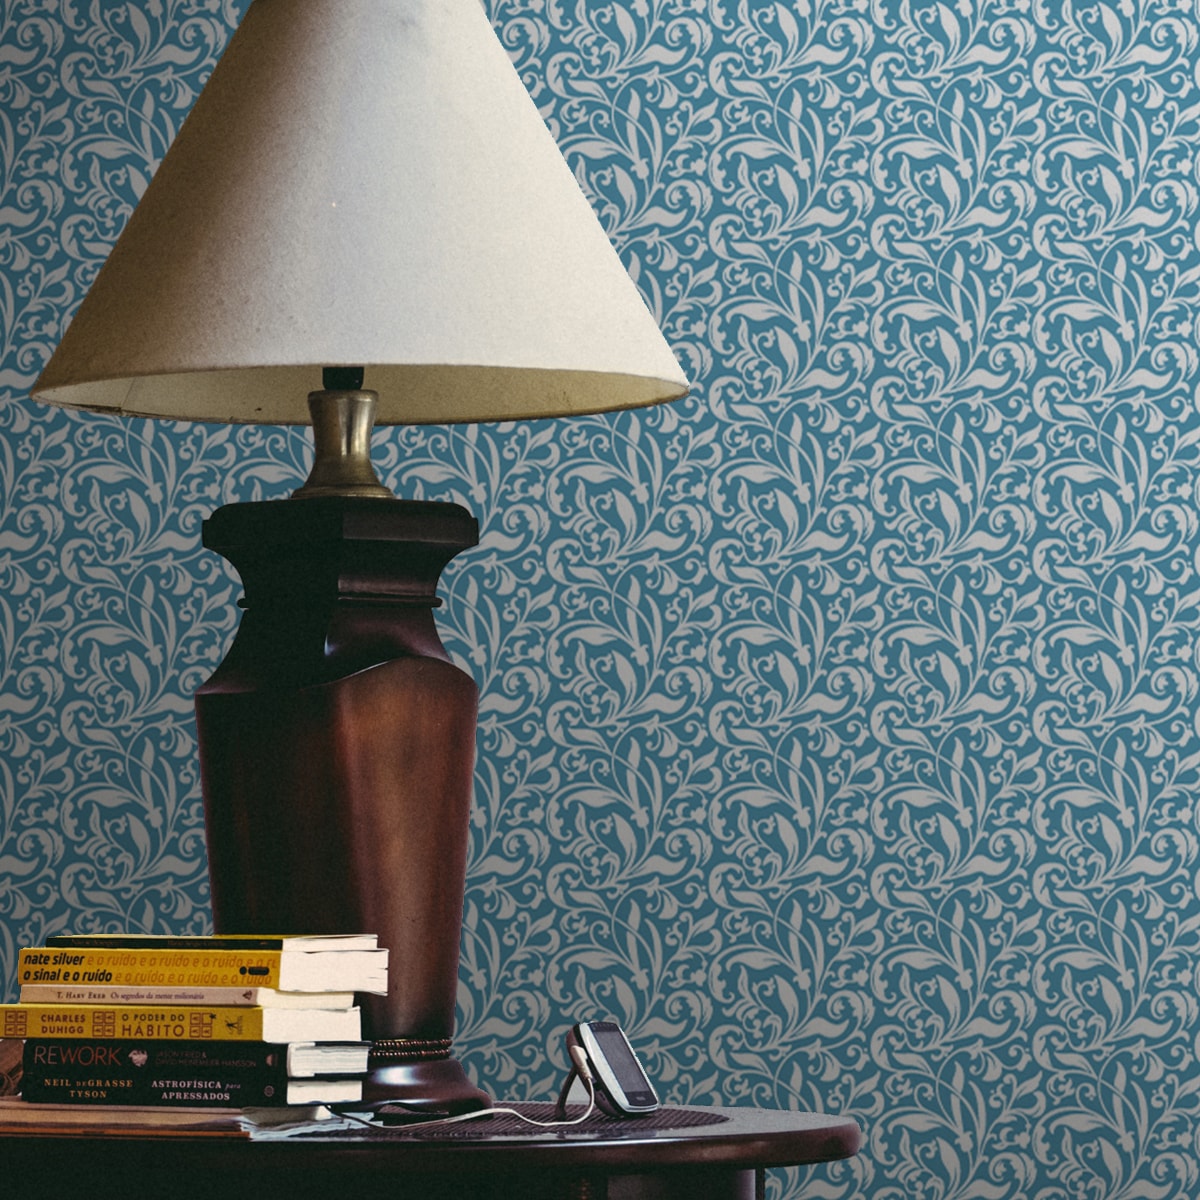 Tapete Wohnzimmer mittelblau: feine florale Tapete "Victorian Delight" mit Blatt Muster hellblau für Schlafzimmer Wohnzimmer